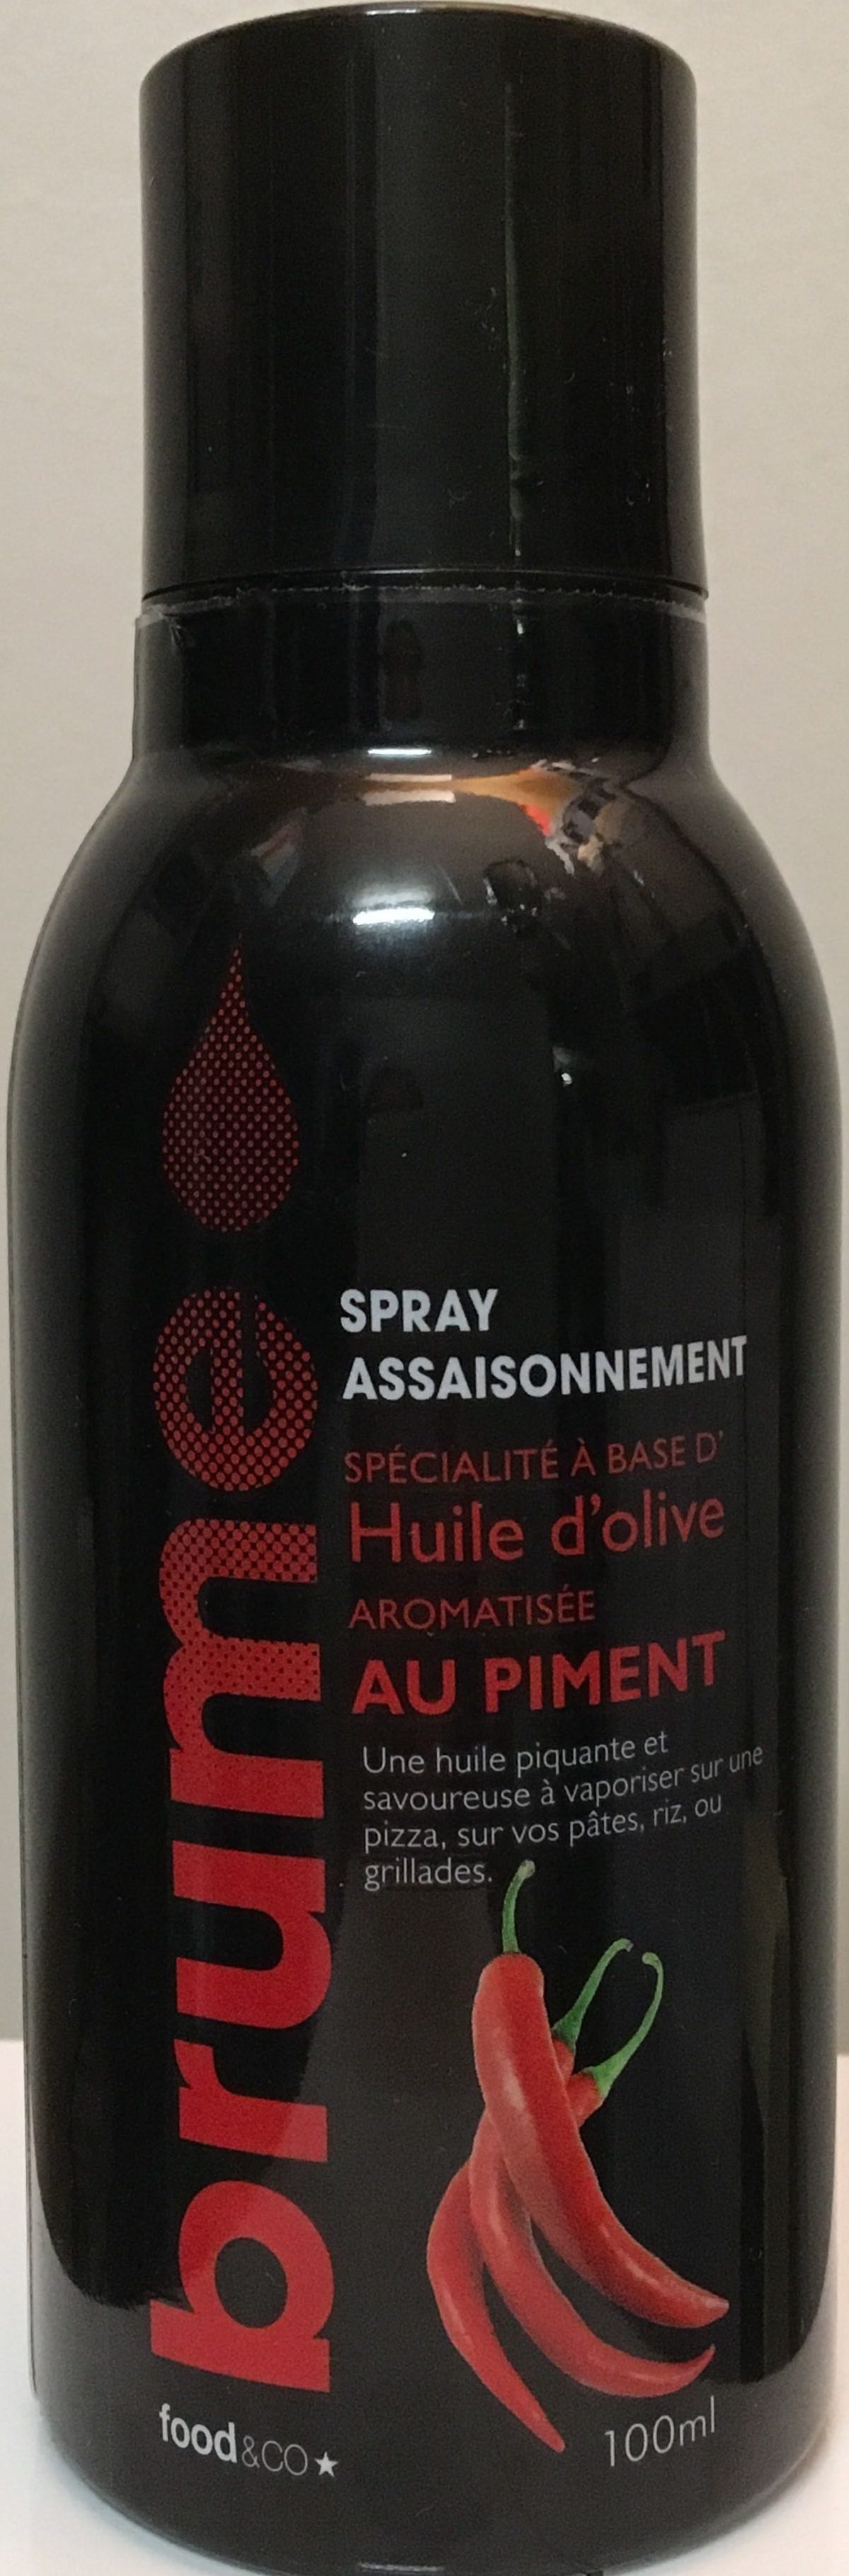 Spray assaisonnement au piment - Product - fr